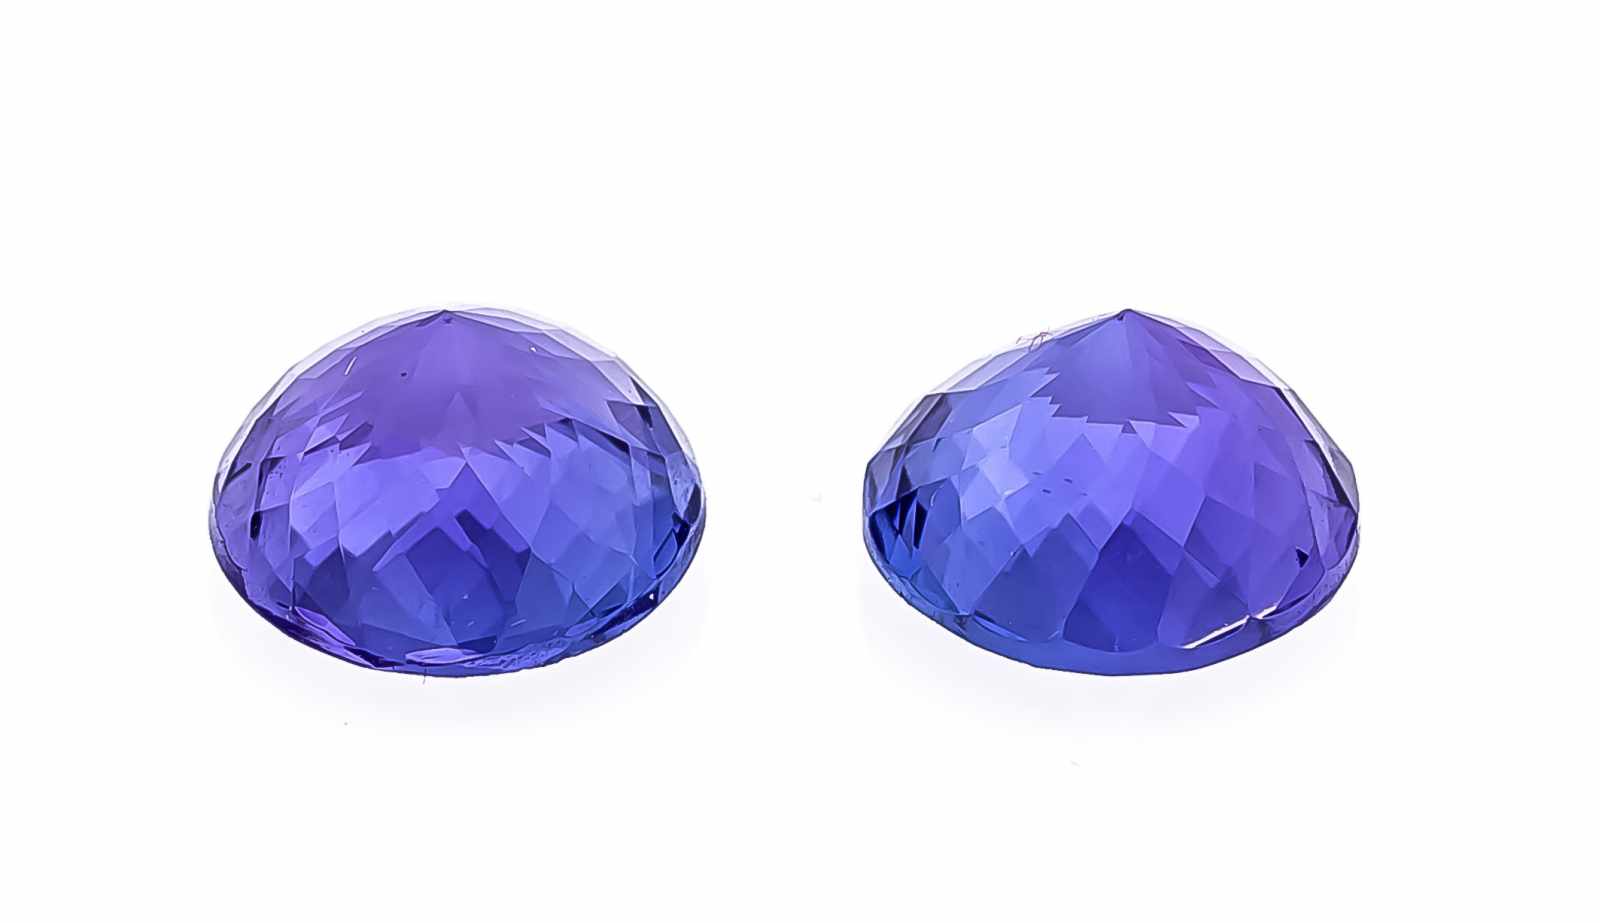 Tansanit Paar, zus. 6,94 ct, rund fac., violettstichiges Blau, exzellente Qualität, Farbe,Brillanz - Image 2 of 2